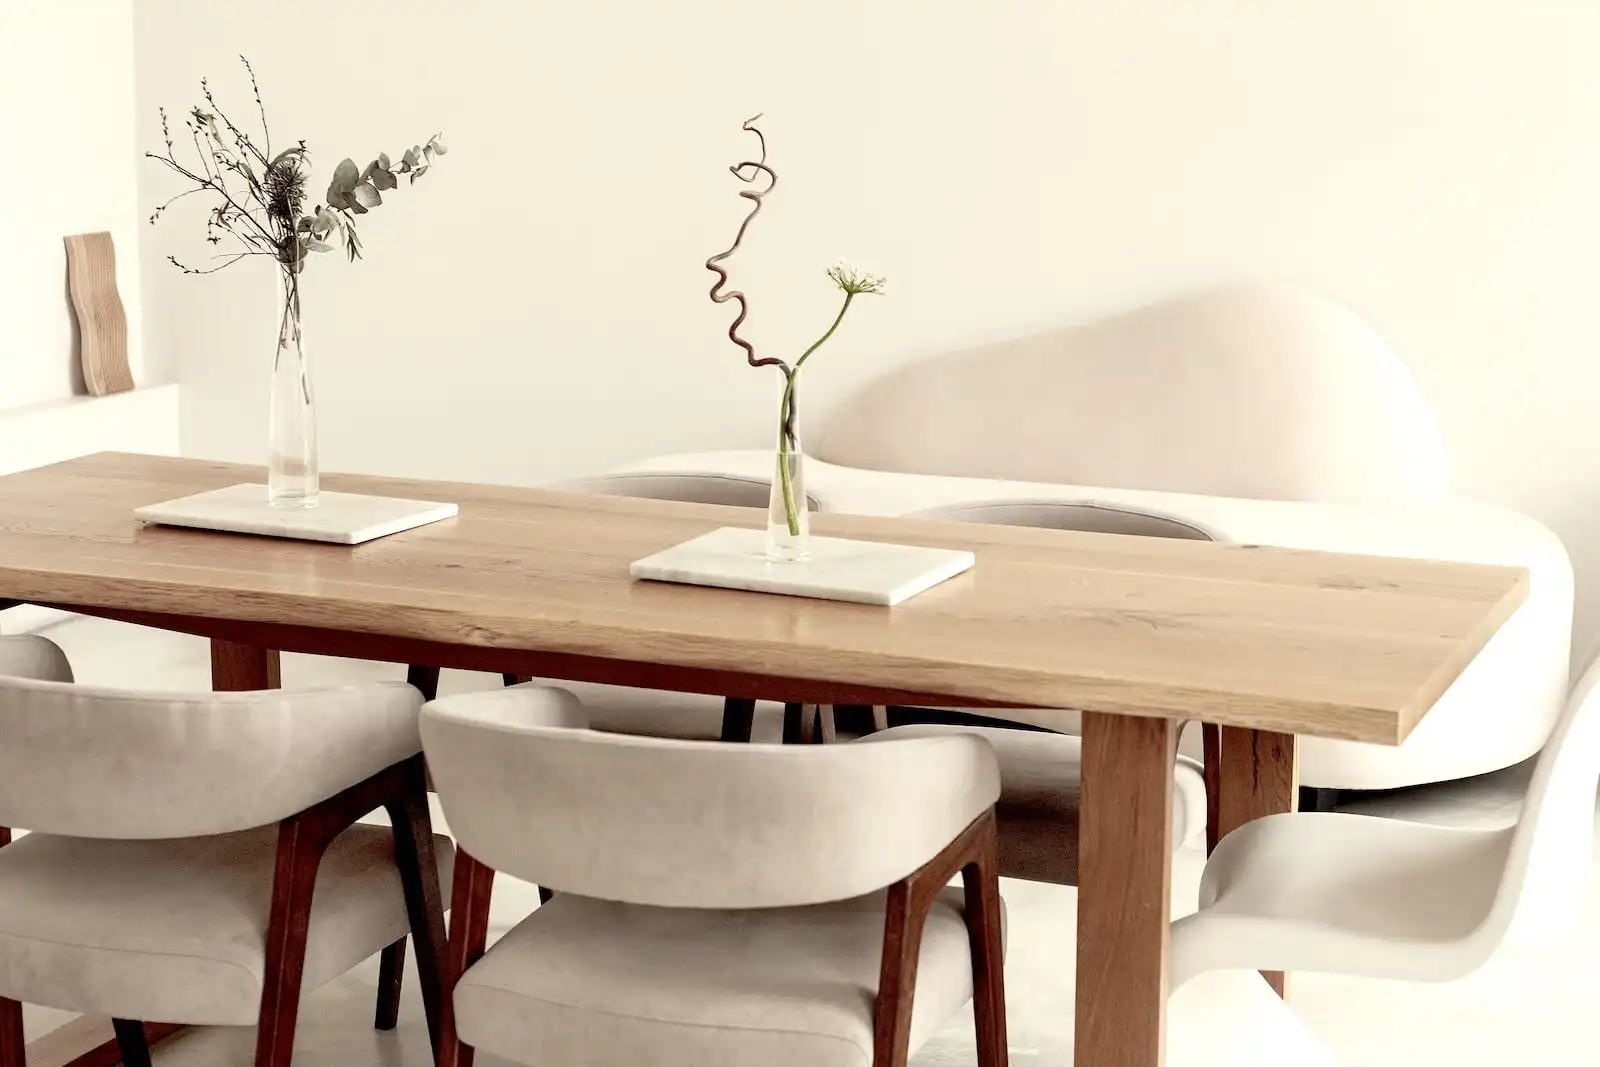 Intérieur chic avec table en bois ancien, chaises modernes en tissu gris, vases minimalistes sur la table, dans une salle à manger épurée et lumineuse.